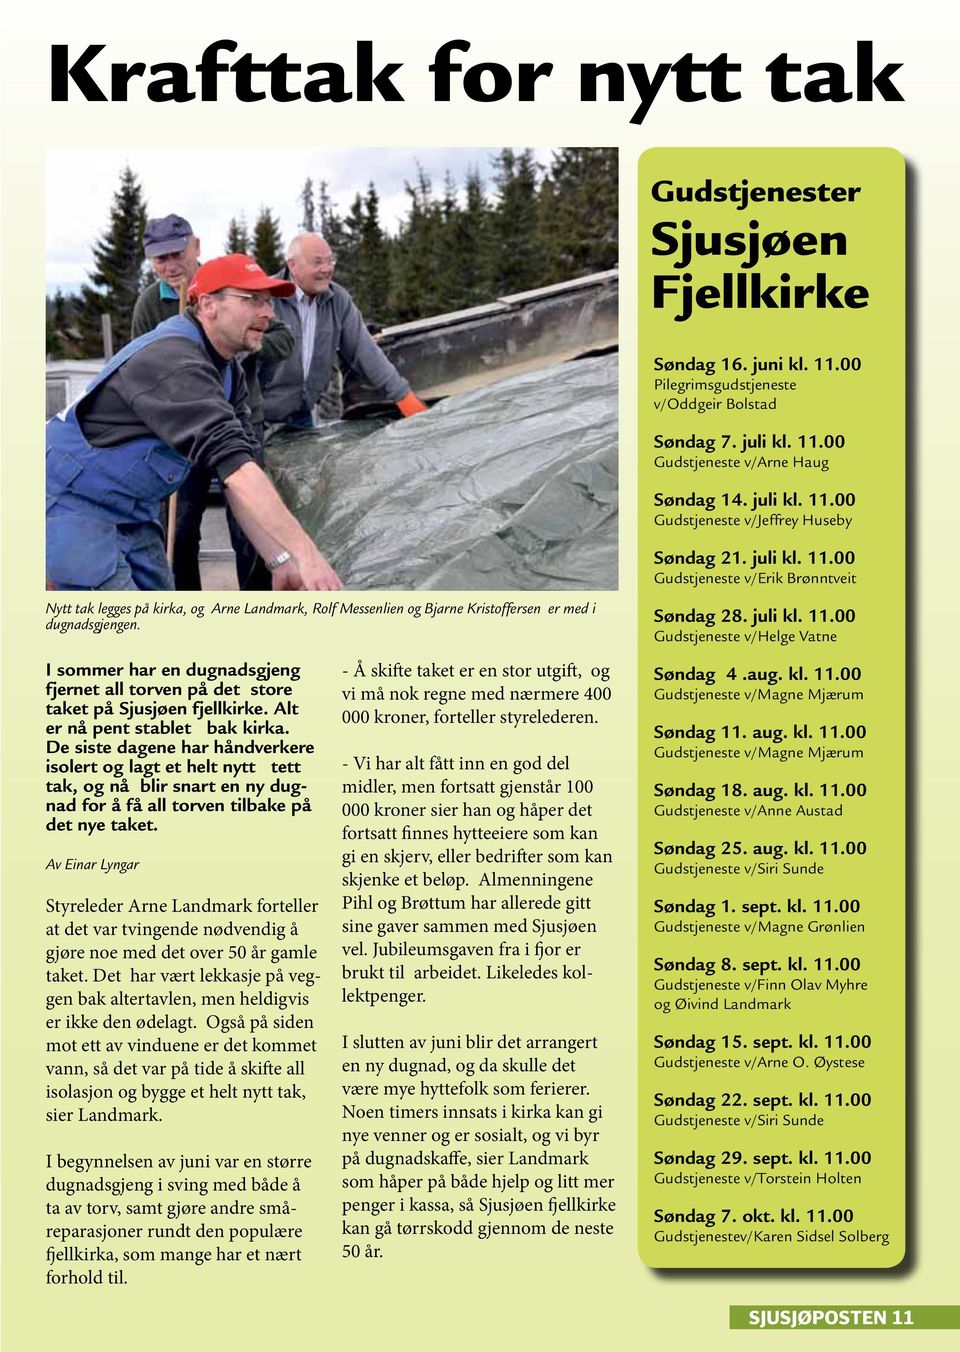 I sommer har en dugnadsgjeng fjernet all torven på det store taket på Sjusjøen fjellkirke. Alt er nå pent stablet bak kirka.